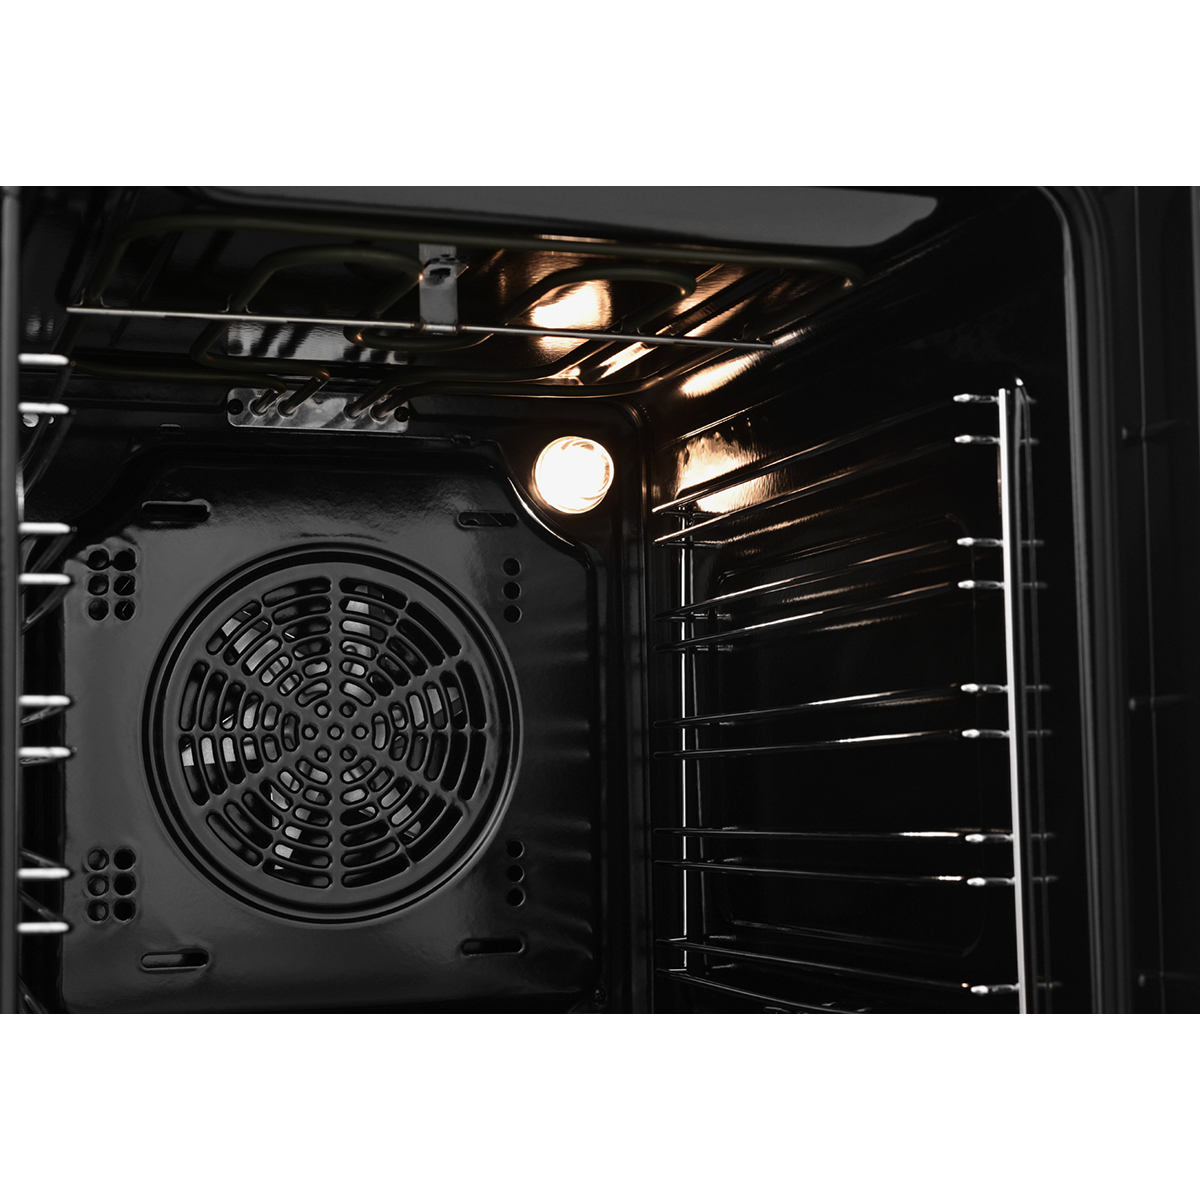 картинка Встраиваемый электрический духовой шкаф ZUGEL ZOE452B, черный